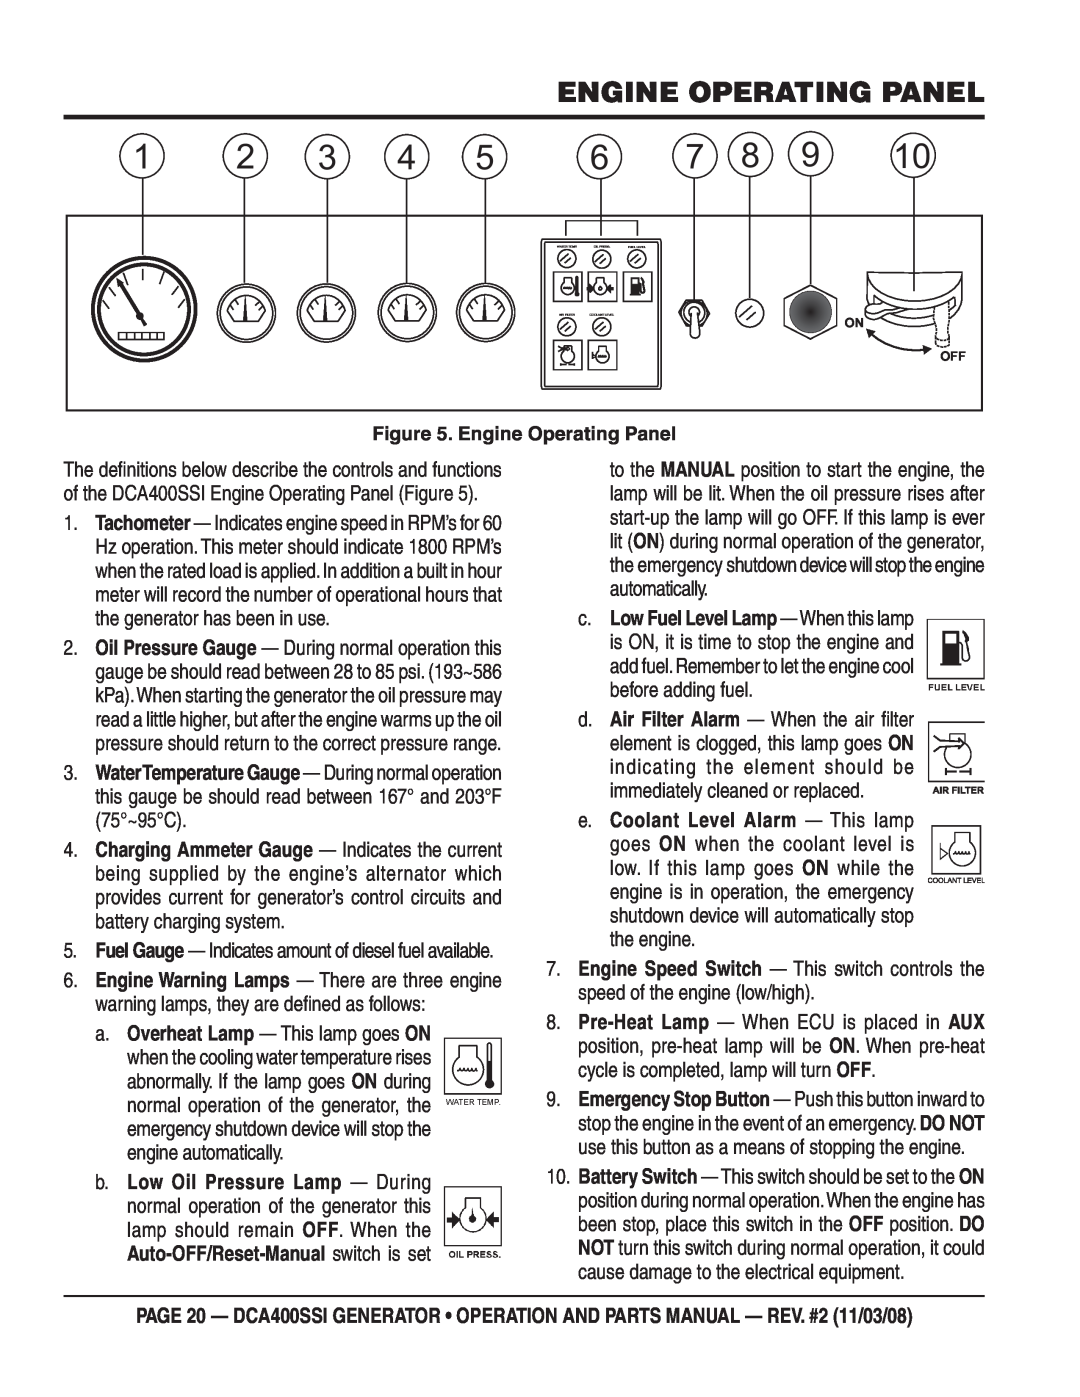 Multiquip DCA400SSI manual Engine Operating Panel, e.Coolant Level Alarm — This lamp 